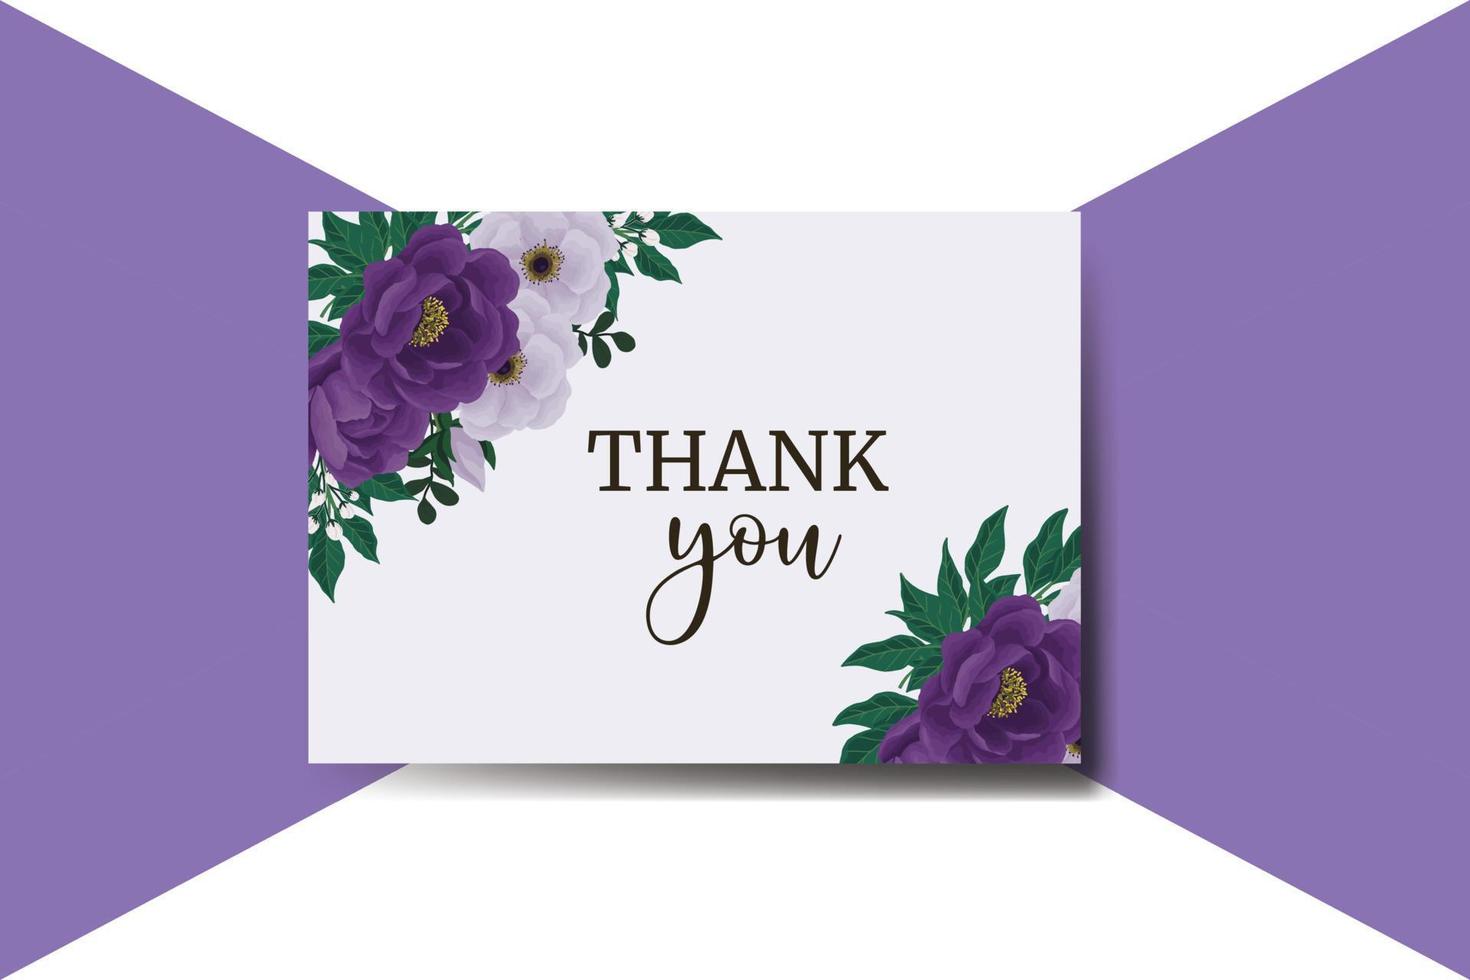 tarjeta de agradecimiento saludo plantilla de diseño de flor rosa peonía púrpura vector